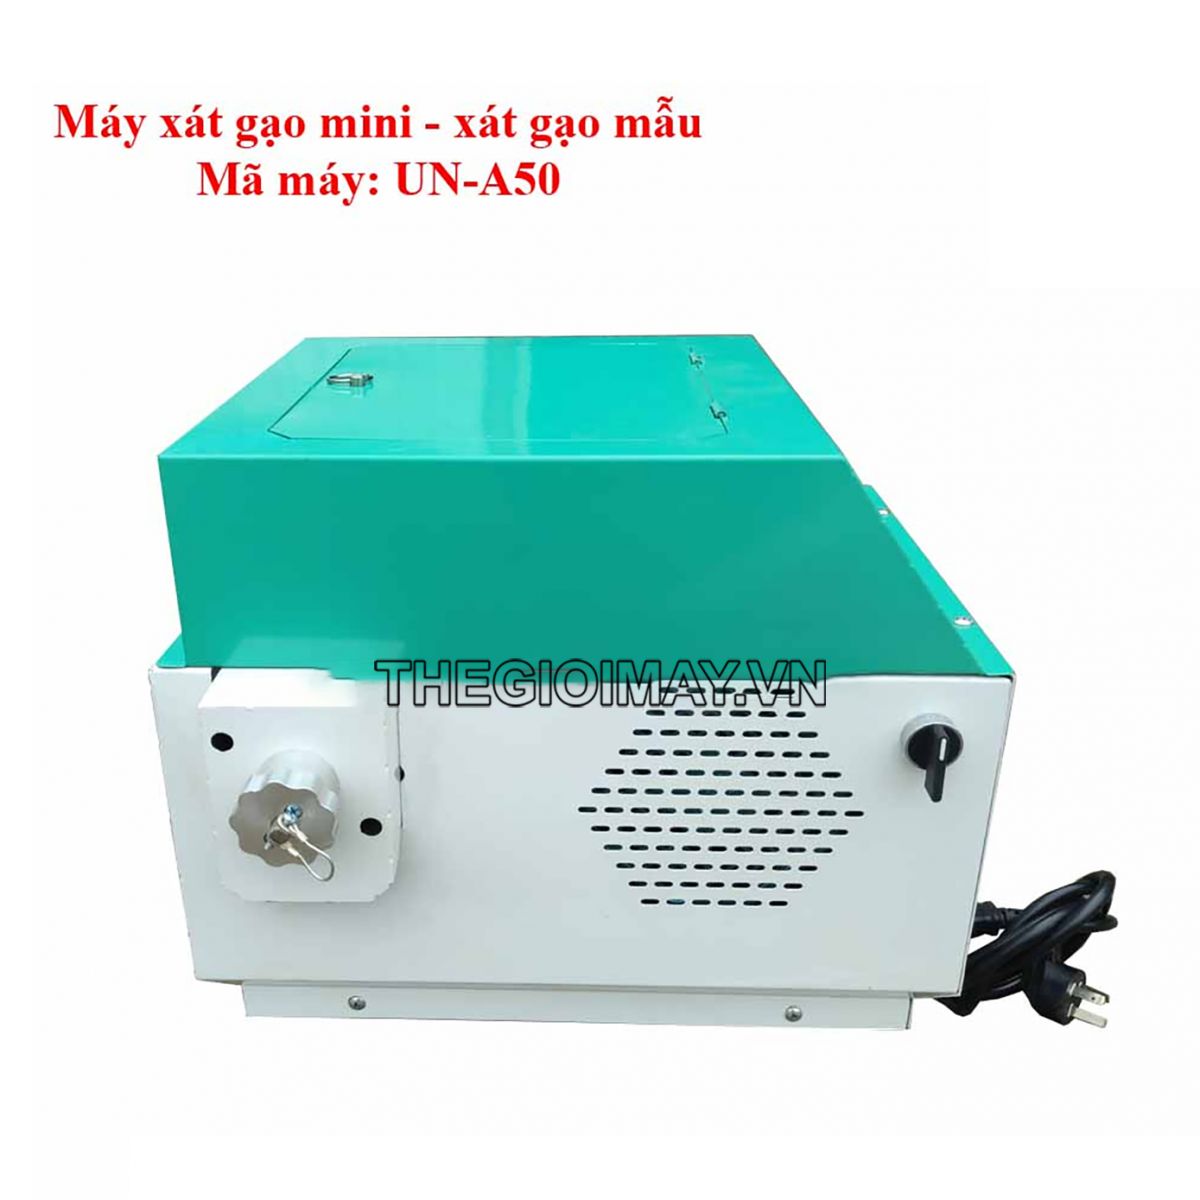 Máy xát gạo mẫu- máy xát gạo mini gia đình UN-A50